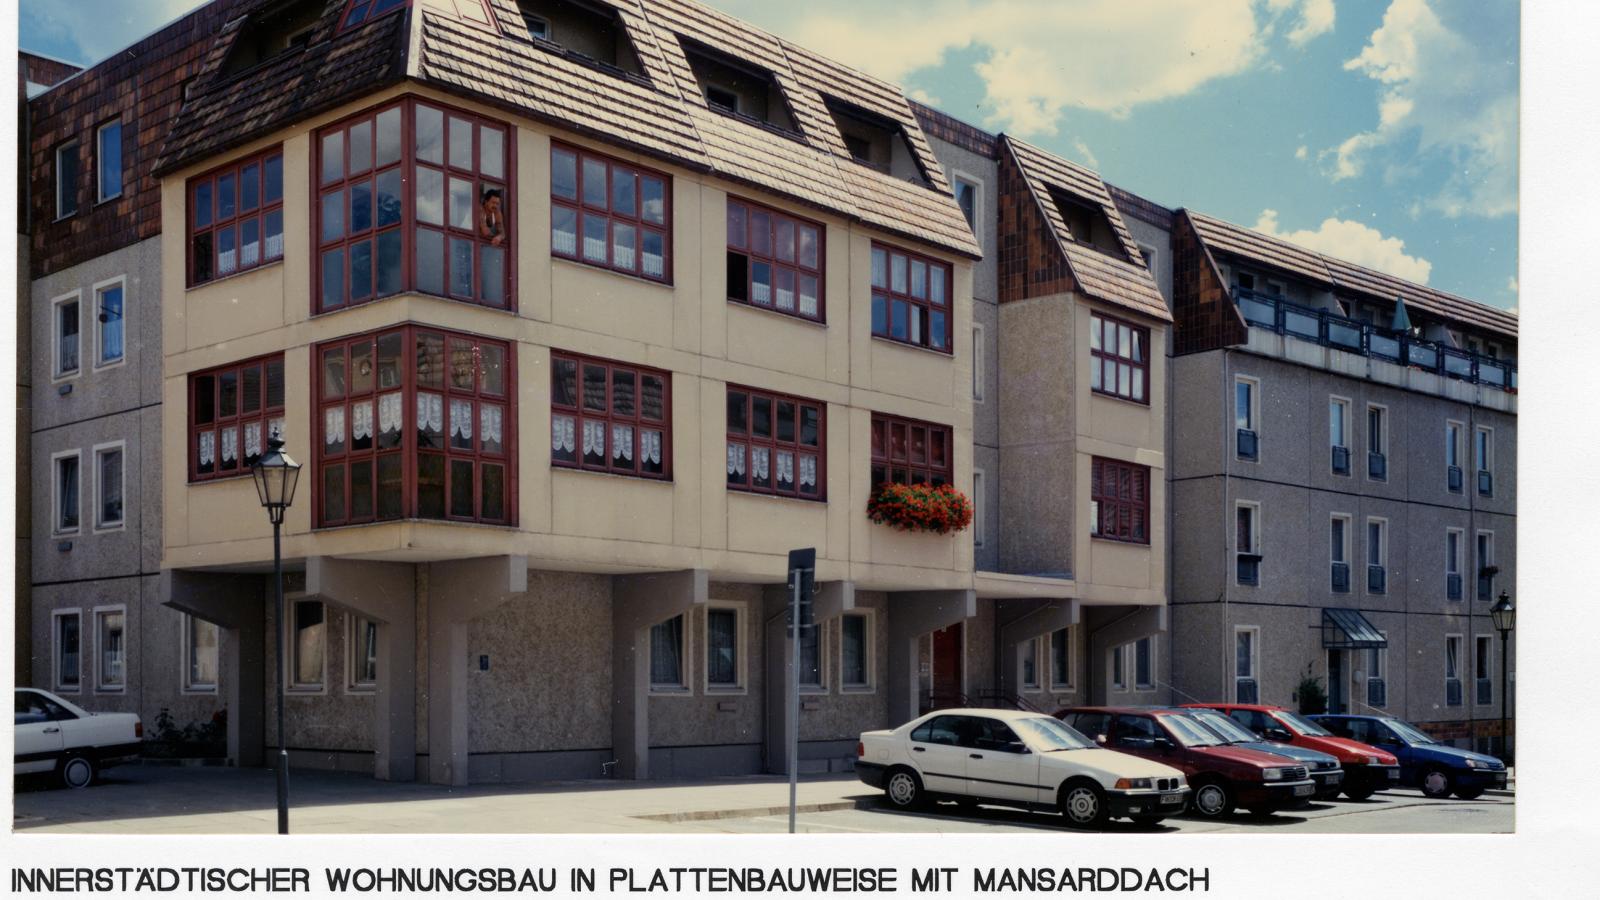 Innerstädtischer Wohnungsbau in Plattenbauweise mit Mansarddach, Fürstenwalde